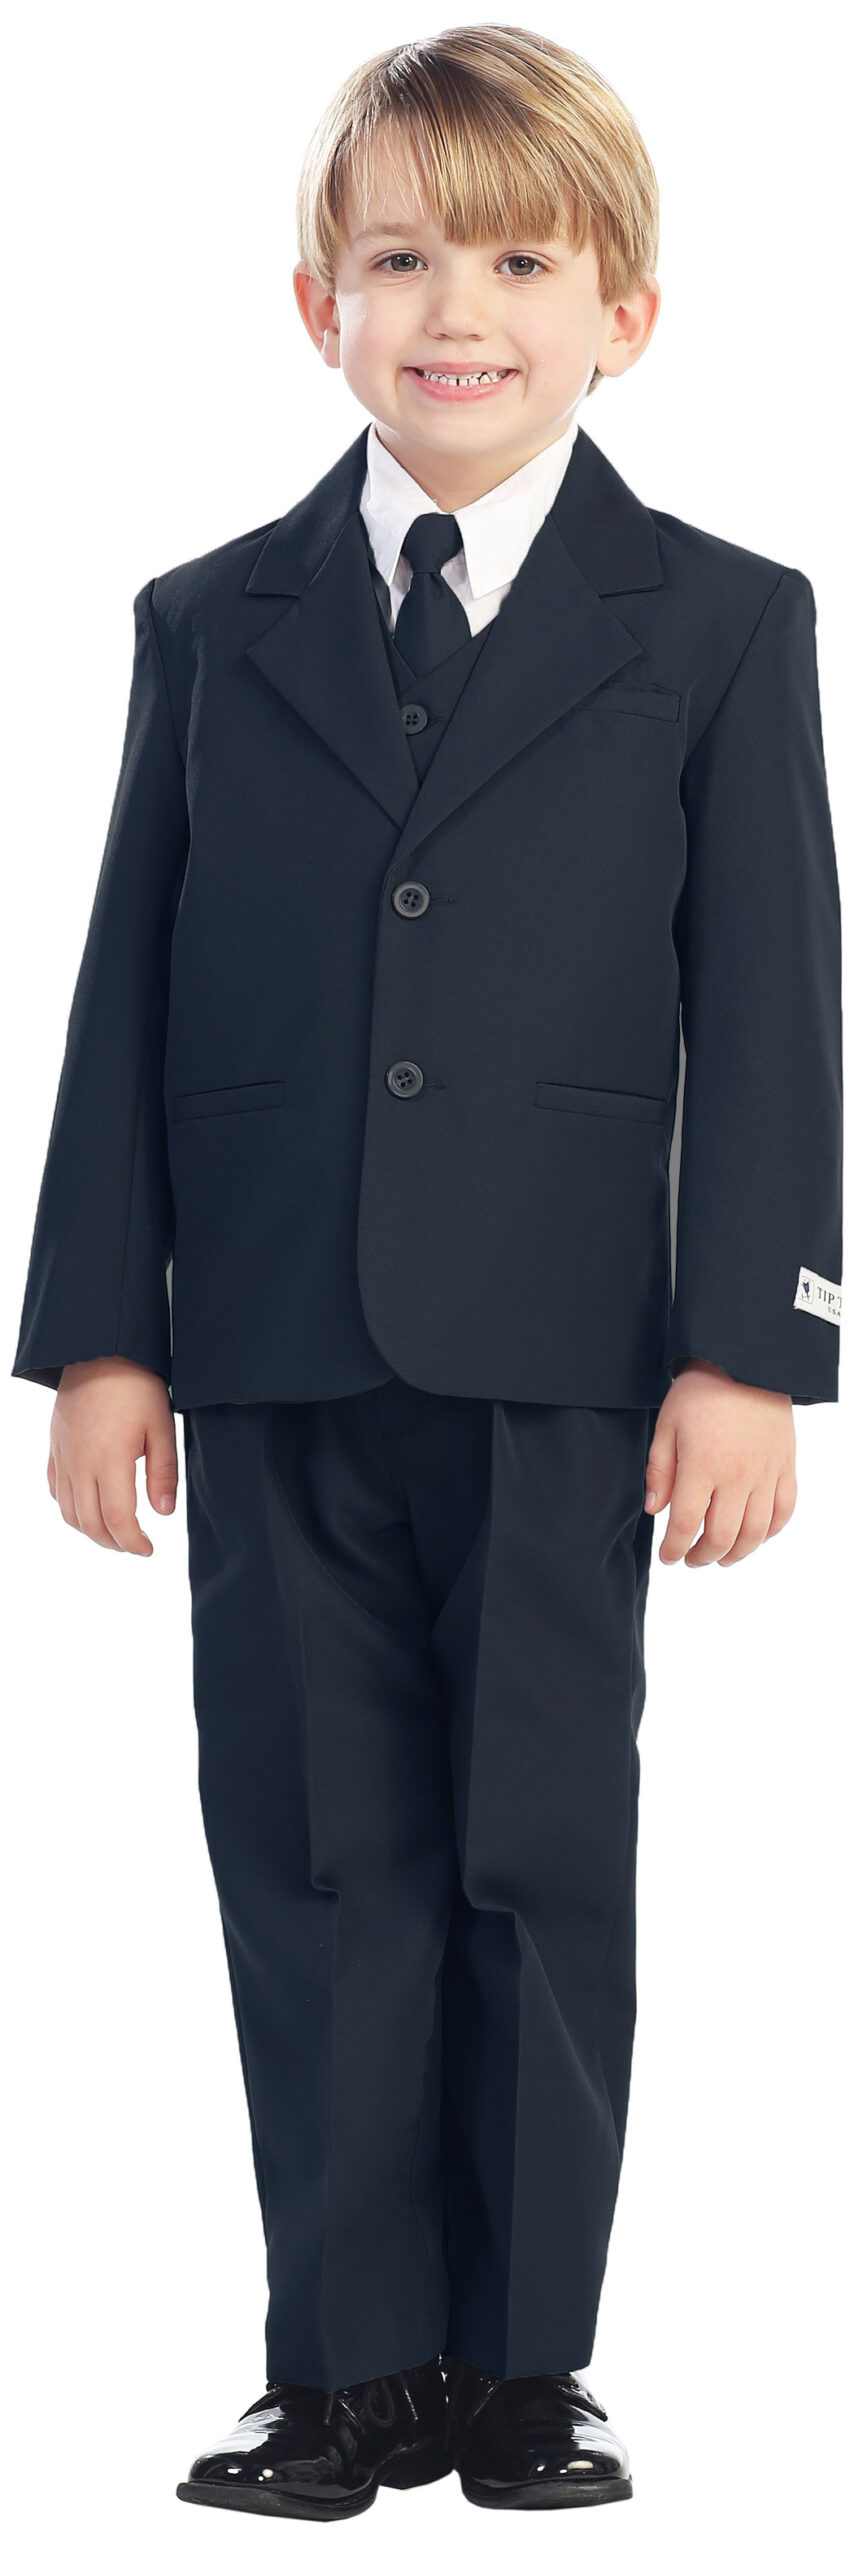 Avery Hill 5-Piece Boy's 2-Button Dress Suit Full-Back Vest - Navy Blue Size 20